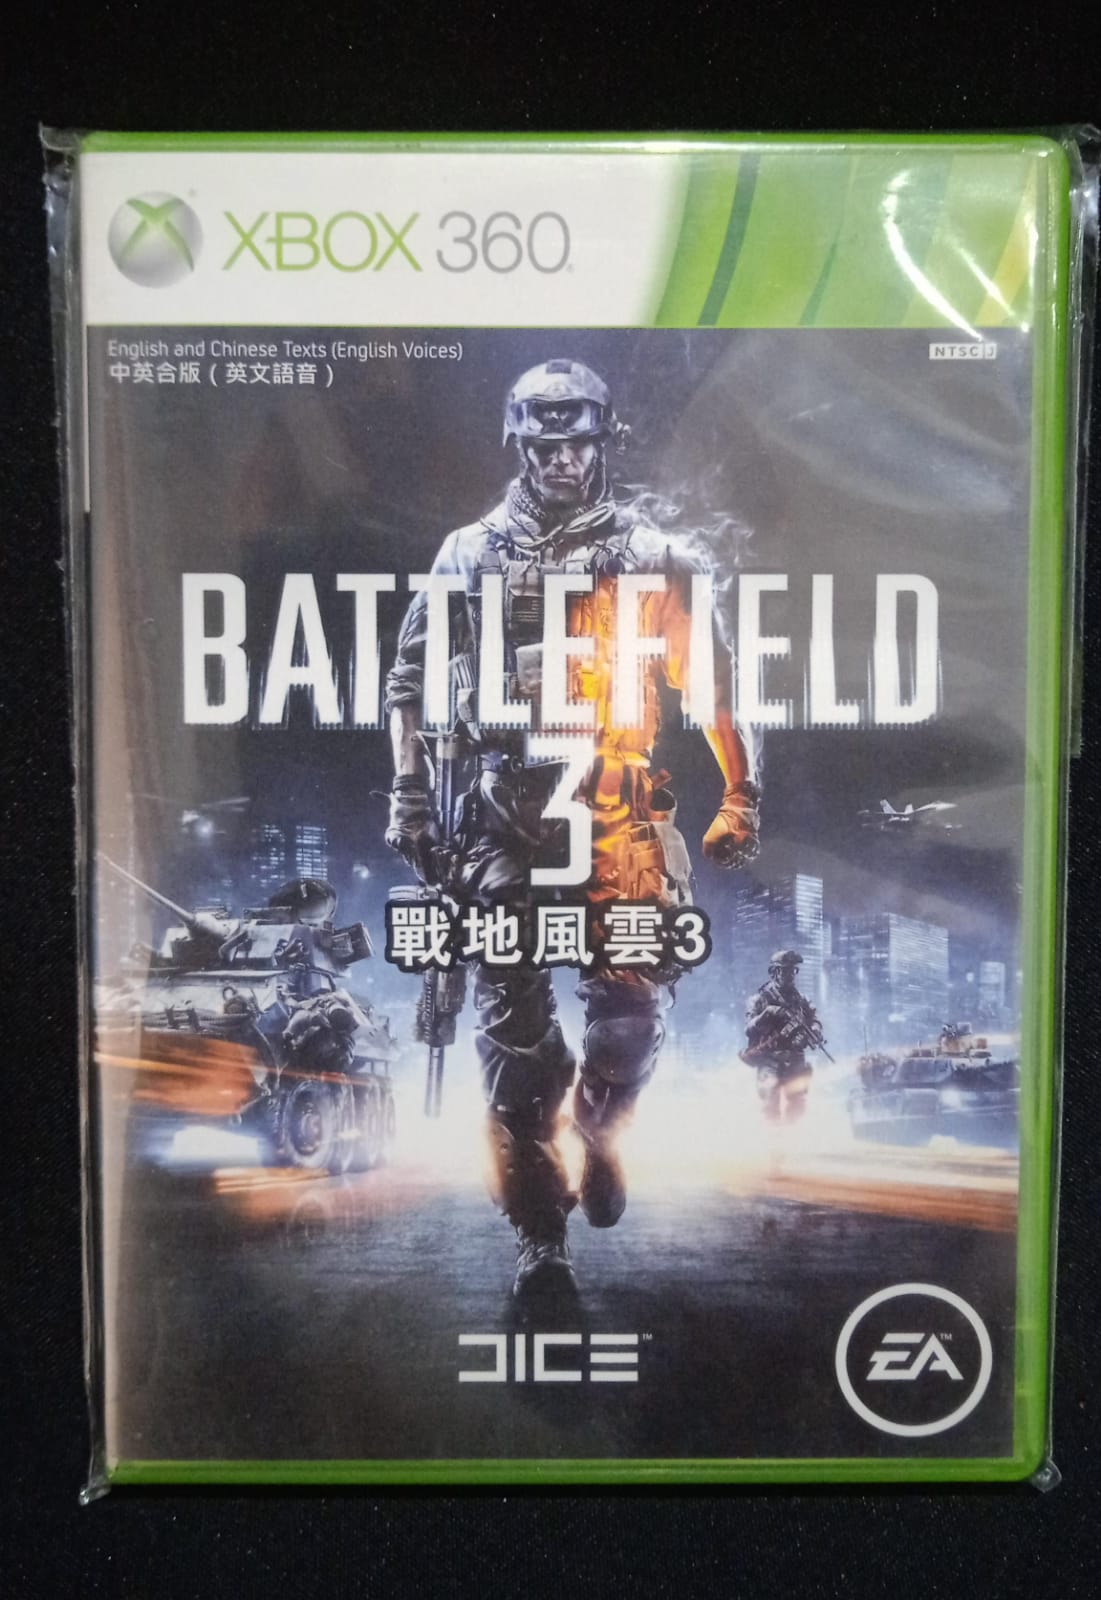 Jogo Battlefield 4 (Hits) - PS4 - EA Games - Jogos de Ação